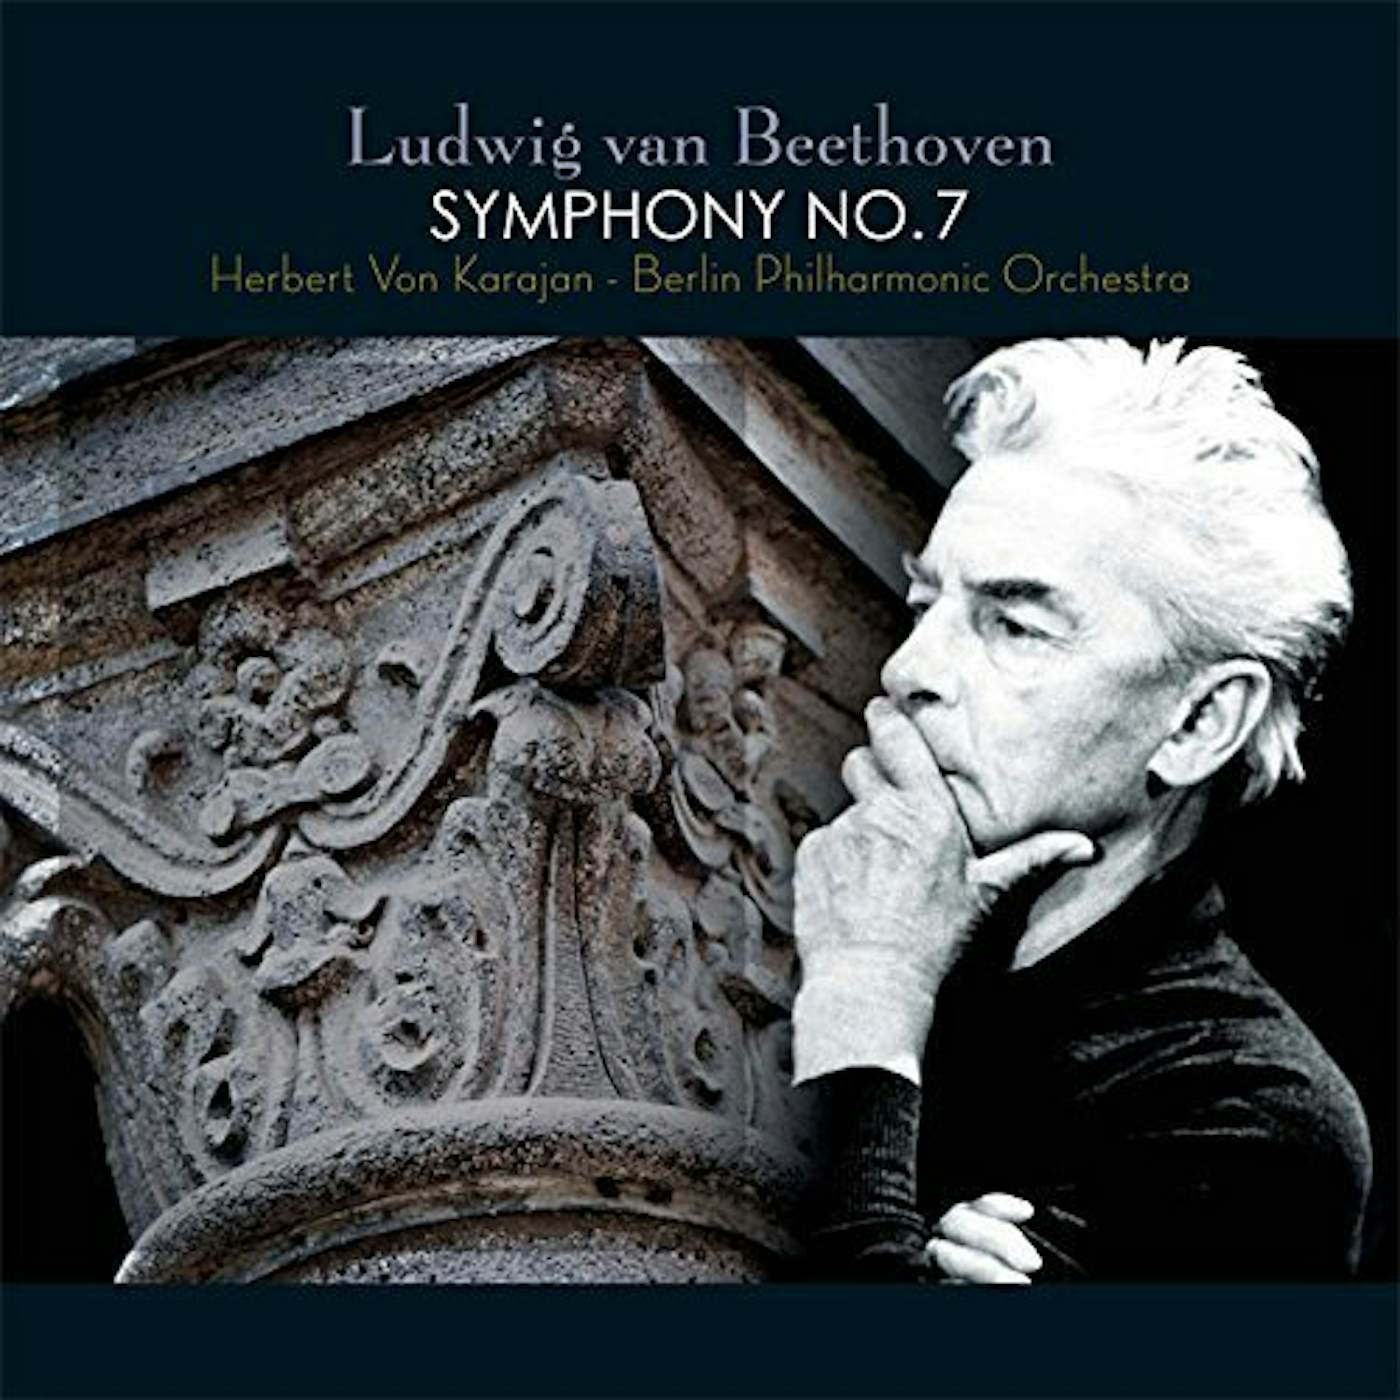 Ludwig van Beethoven SYMPHONY NO. 7 Vinyl Record